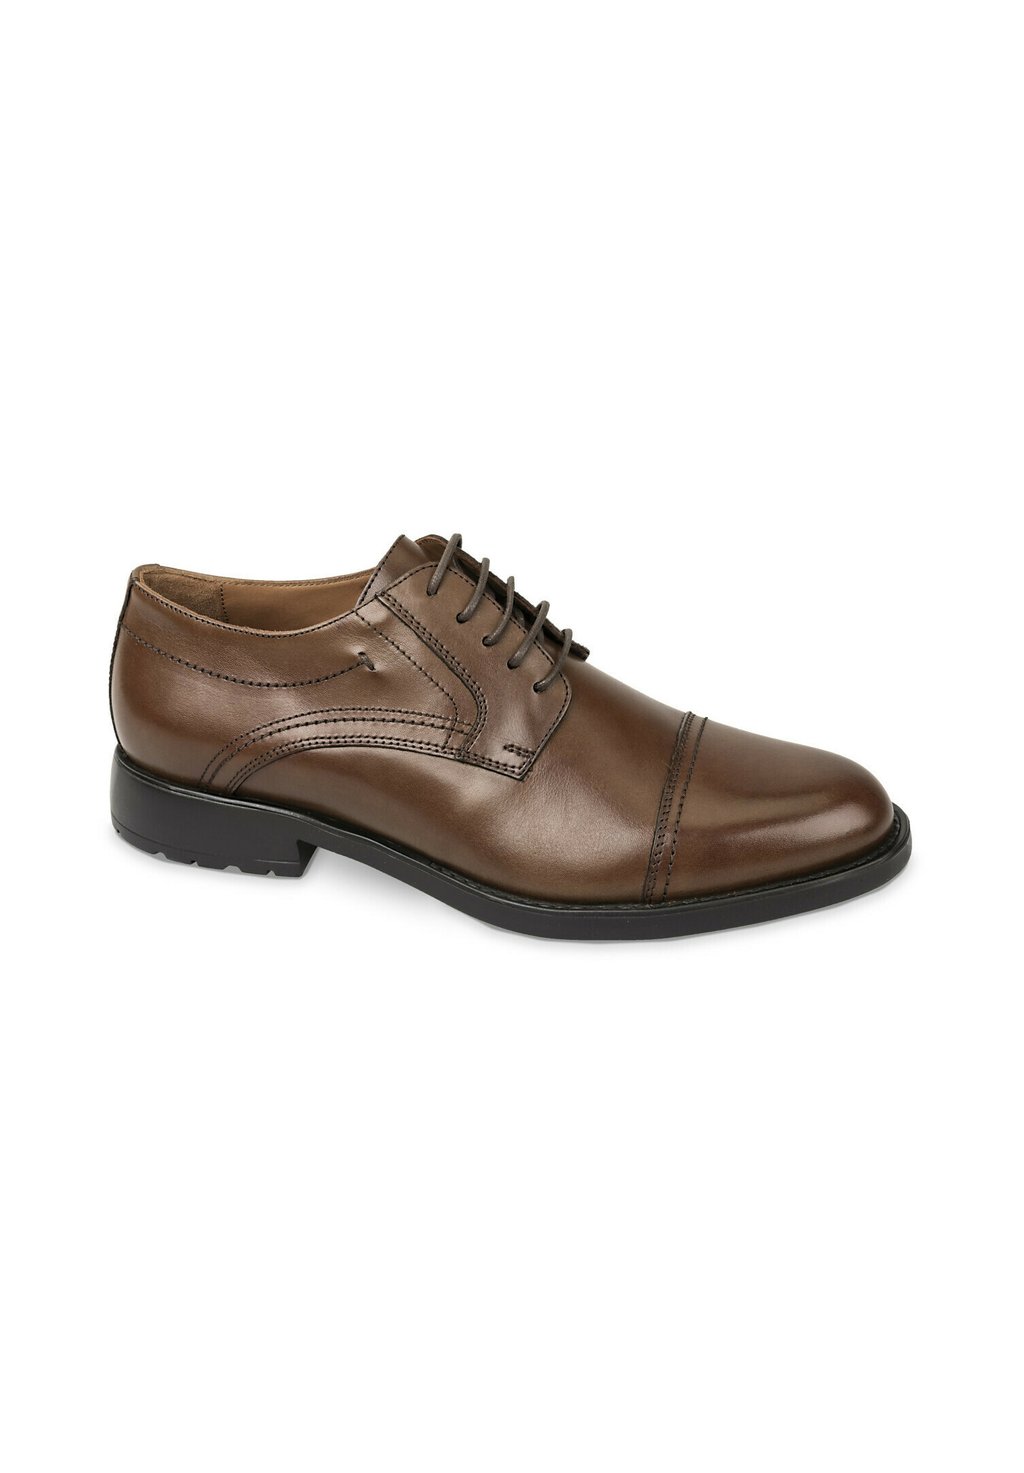 Элегантные туфли на шнуровке Classica Valleverde, цвет cognac элегантные туфли на шнуровке faro aldo цвет cognac